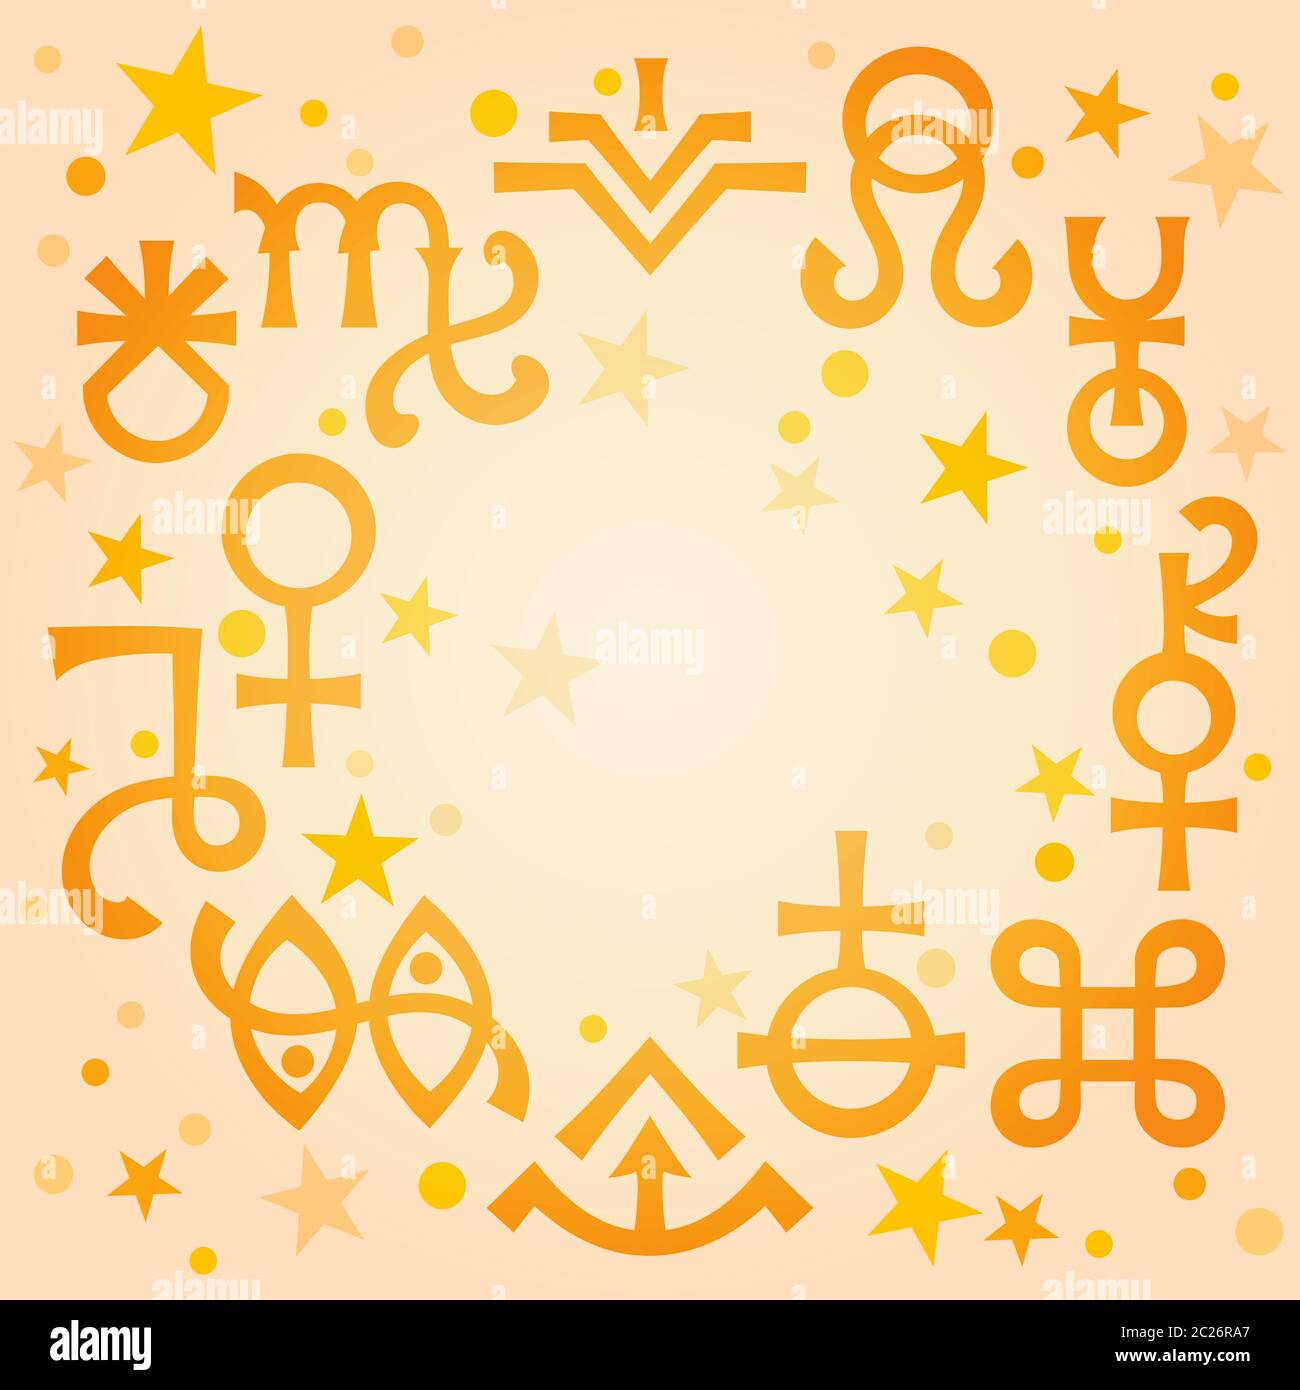 Diadème astrologique (signes astrologiques et symboles mystiques occultes), fond chaud de motif céleste matinal avec étoiles. Banque D'Images